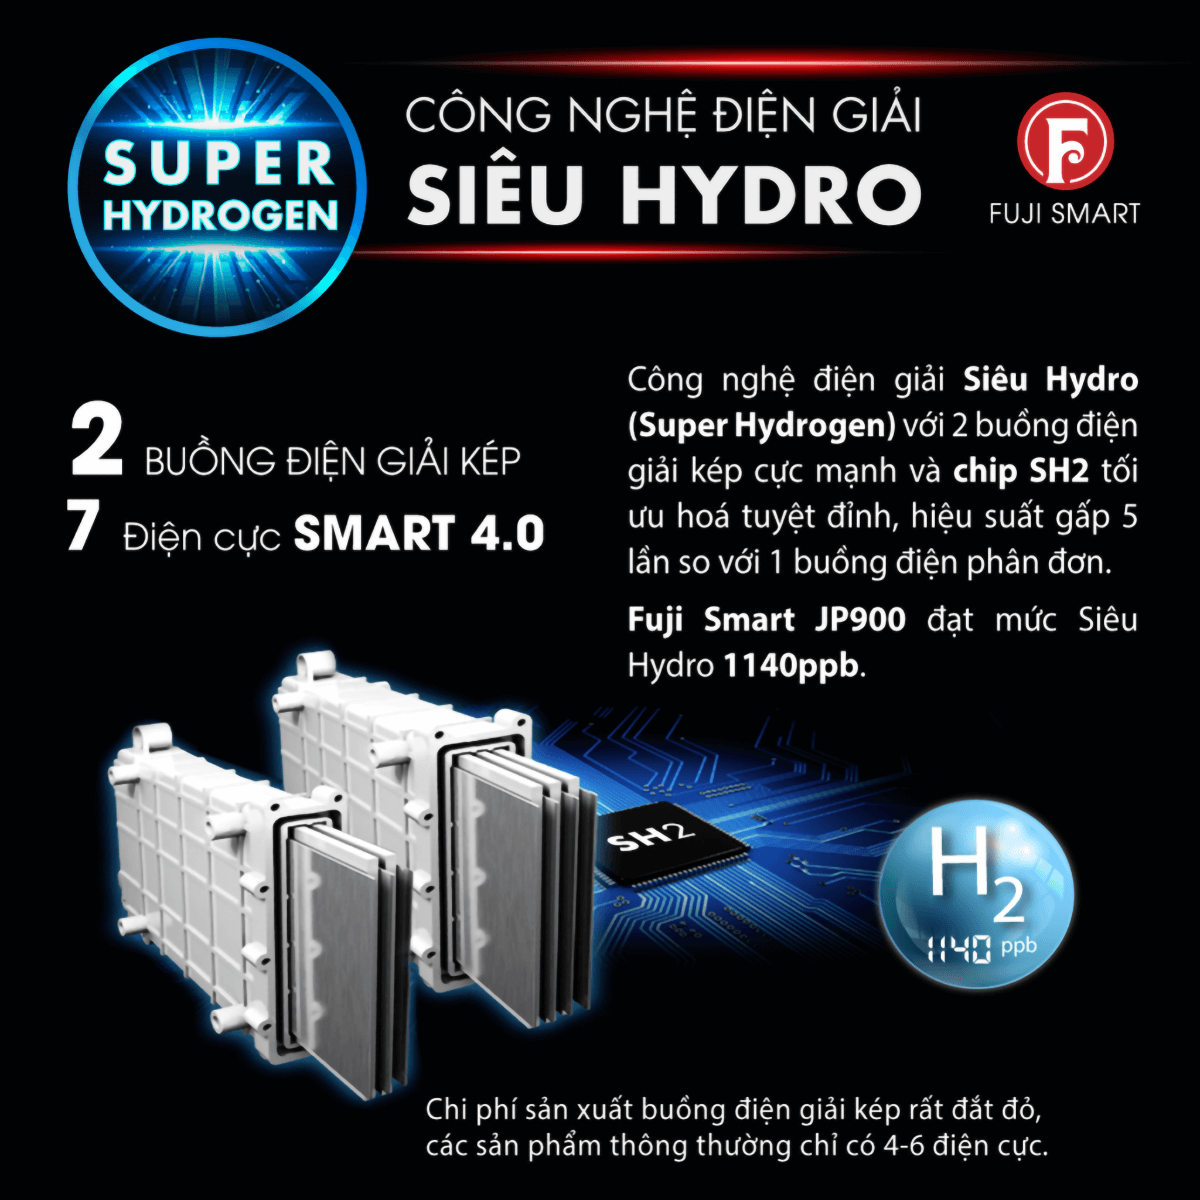 Buồng điện phân kép của máy lọc nước ion kiềm Fuji Smart JP900 mang đến hiệu suất x5 lần